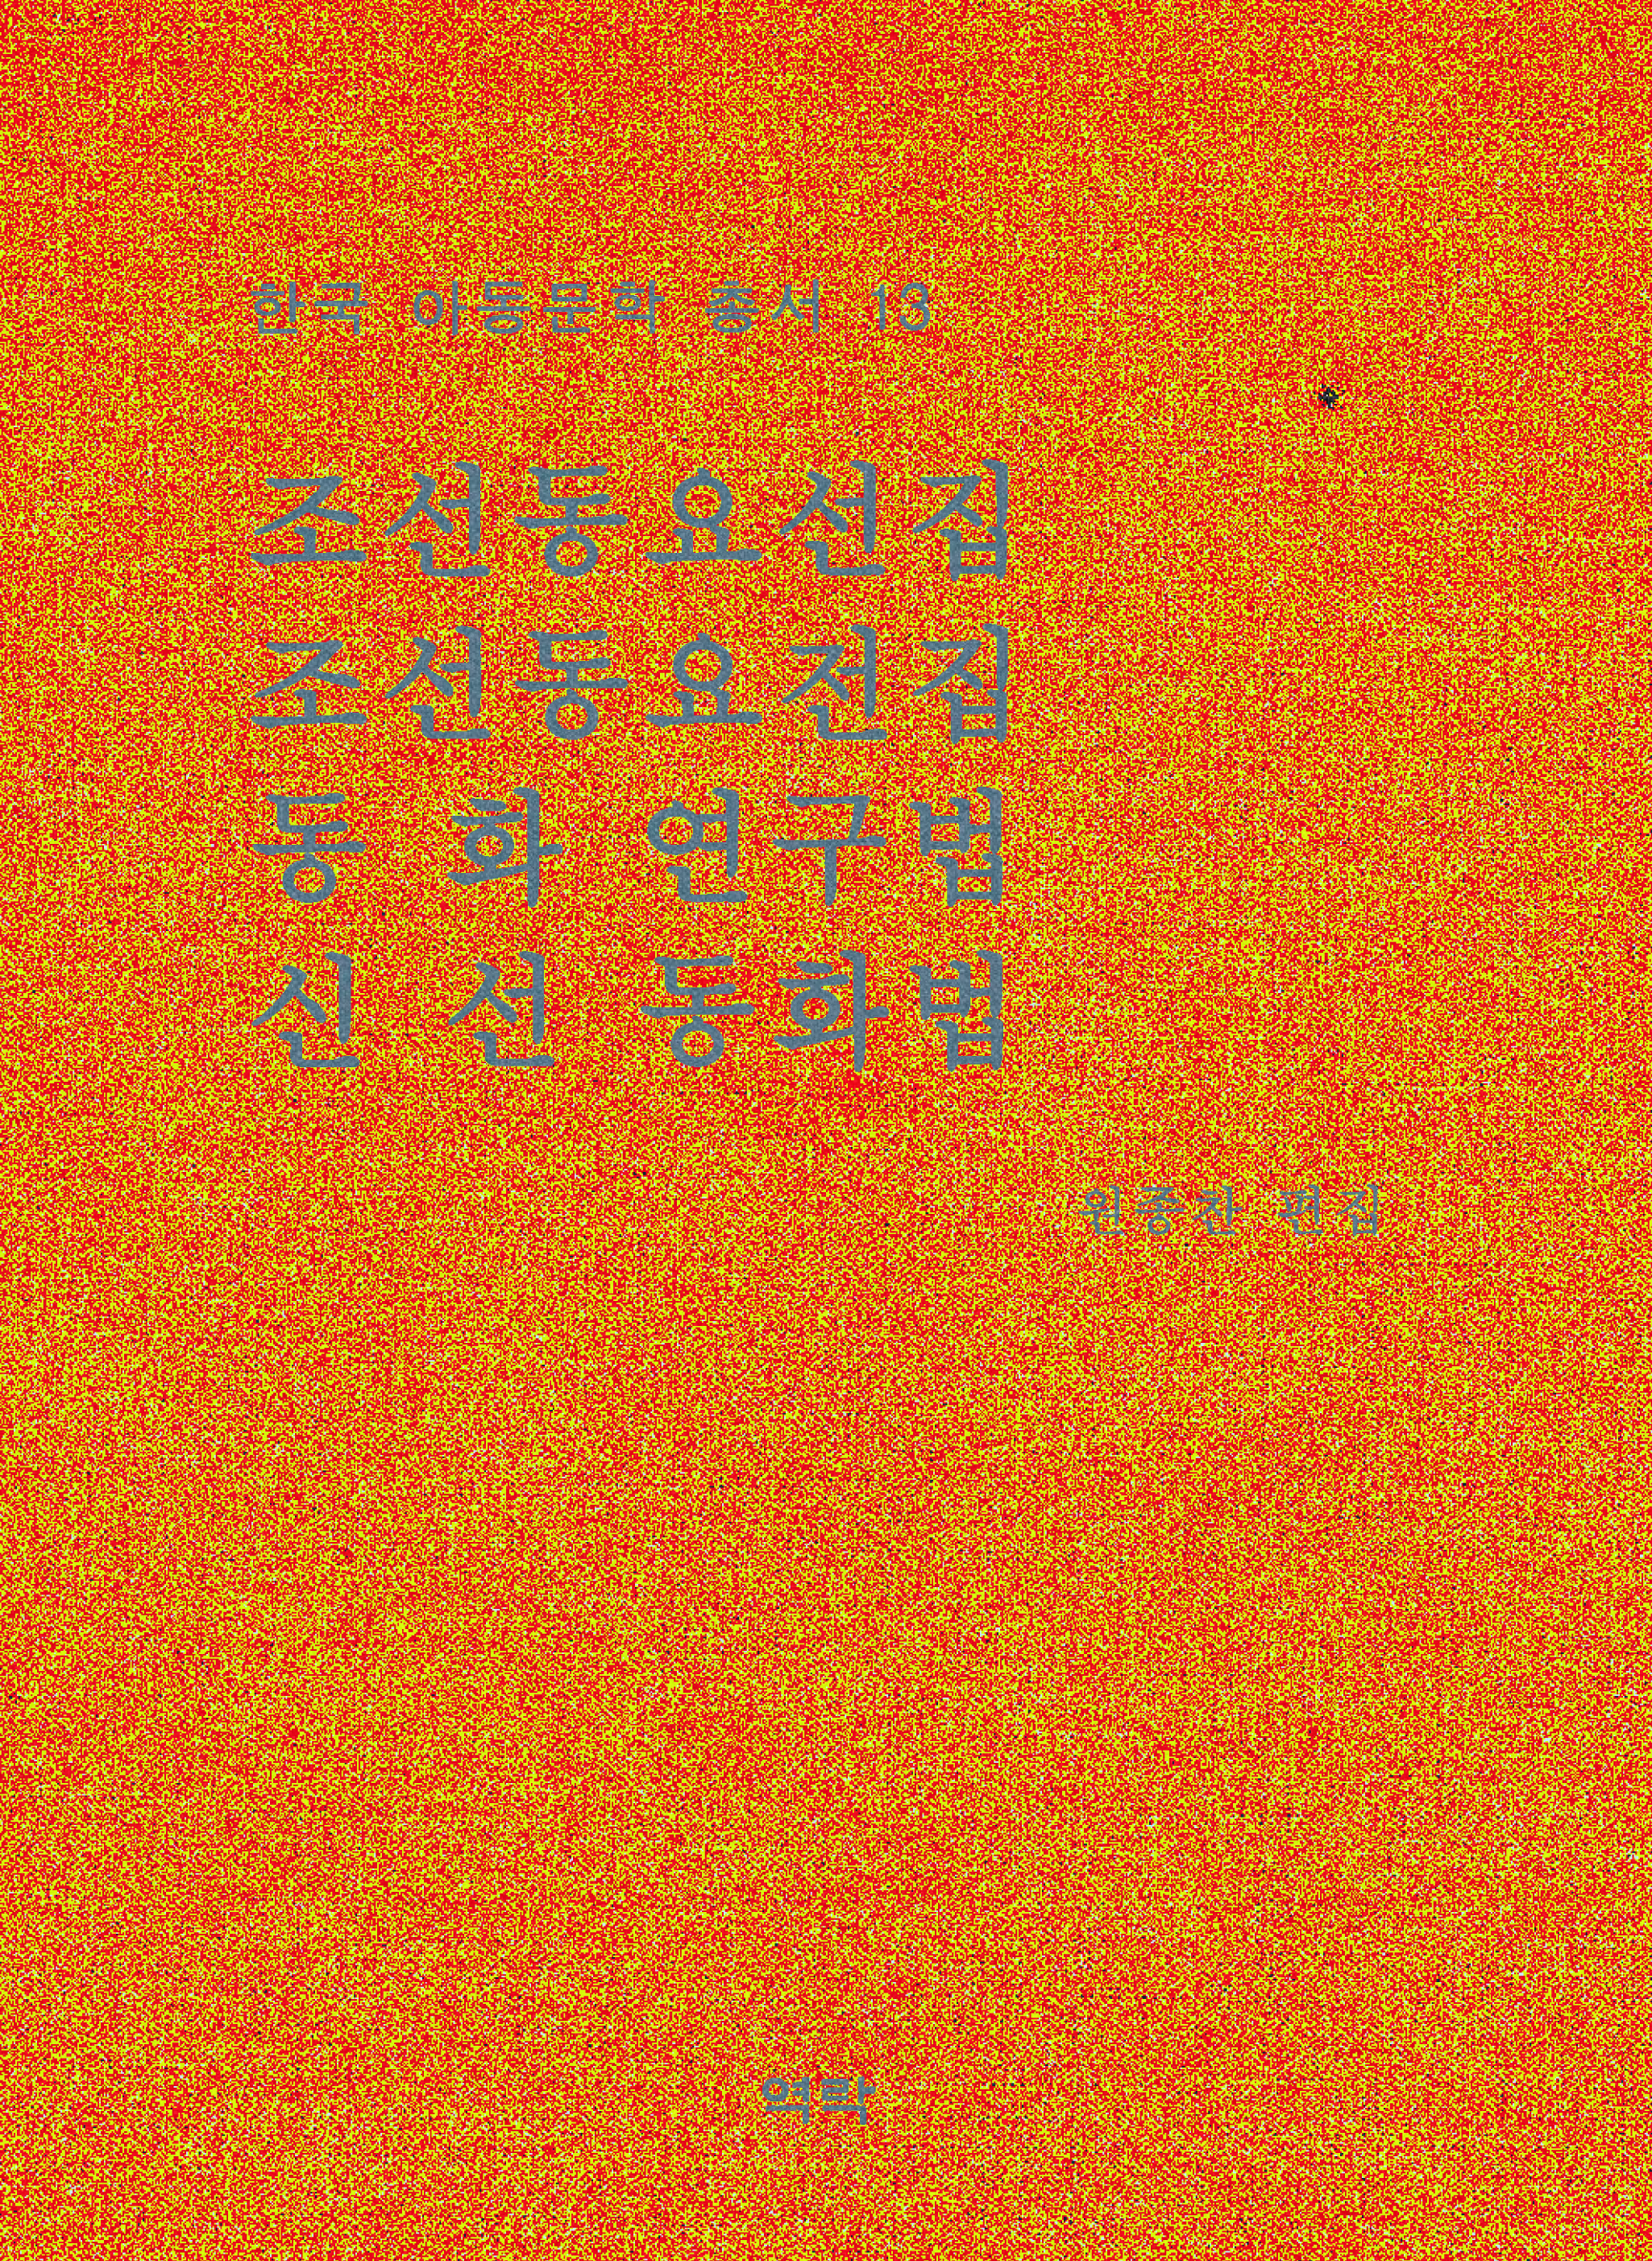 한국아동문학총서 13권